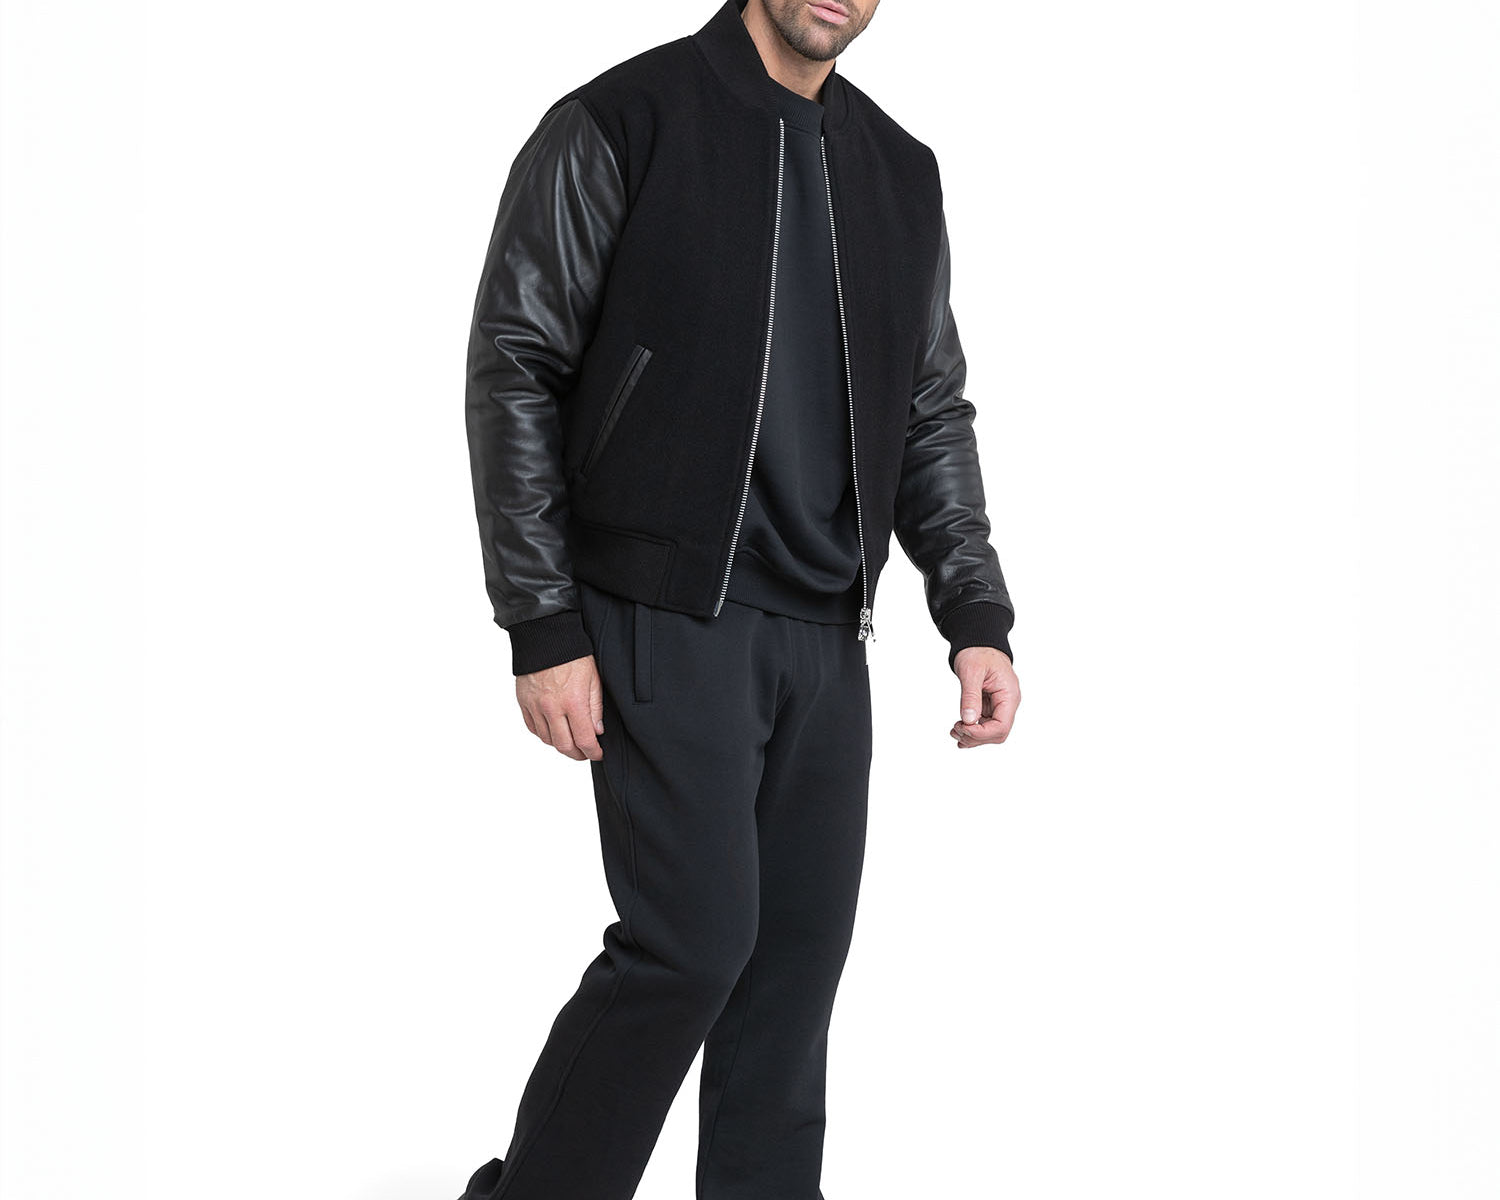 Sportlich-elegante schwarze Leder Bomberjacke für Herren - Übergangsjacke